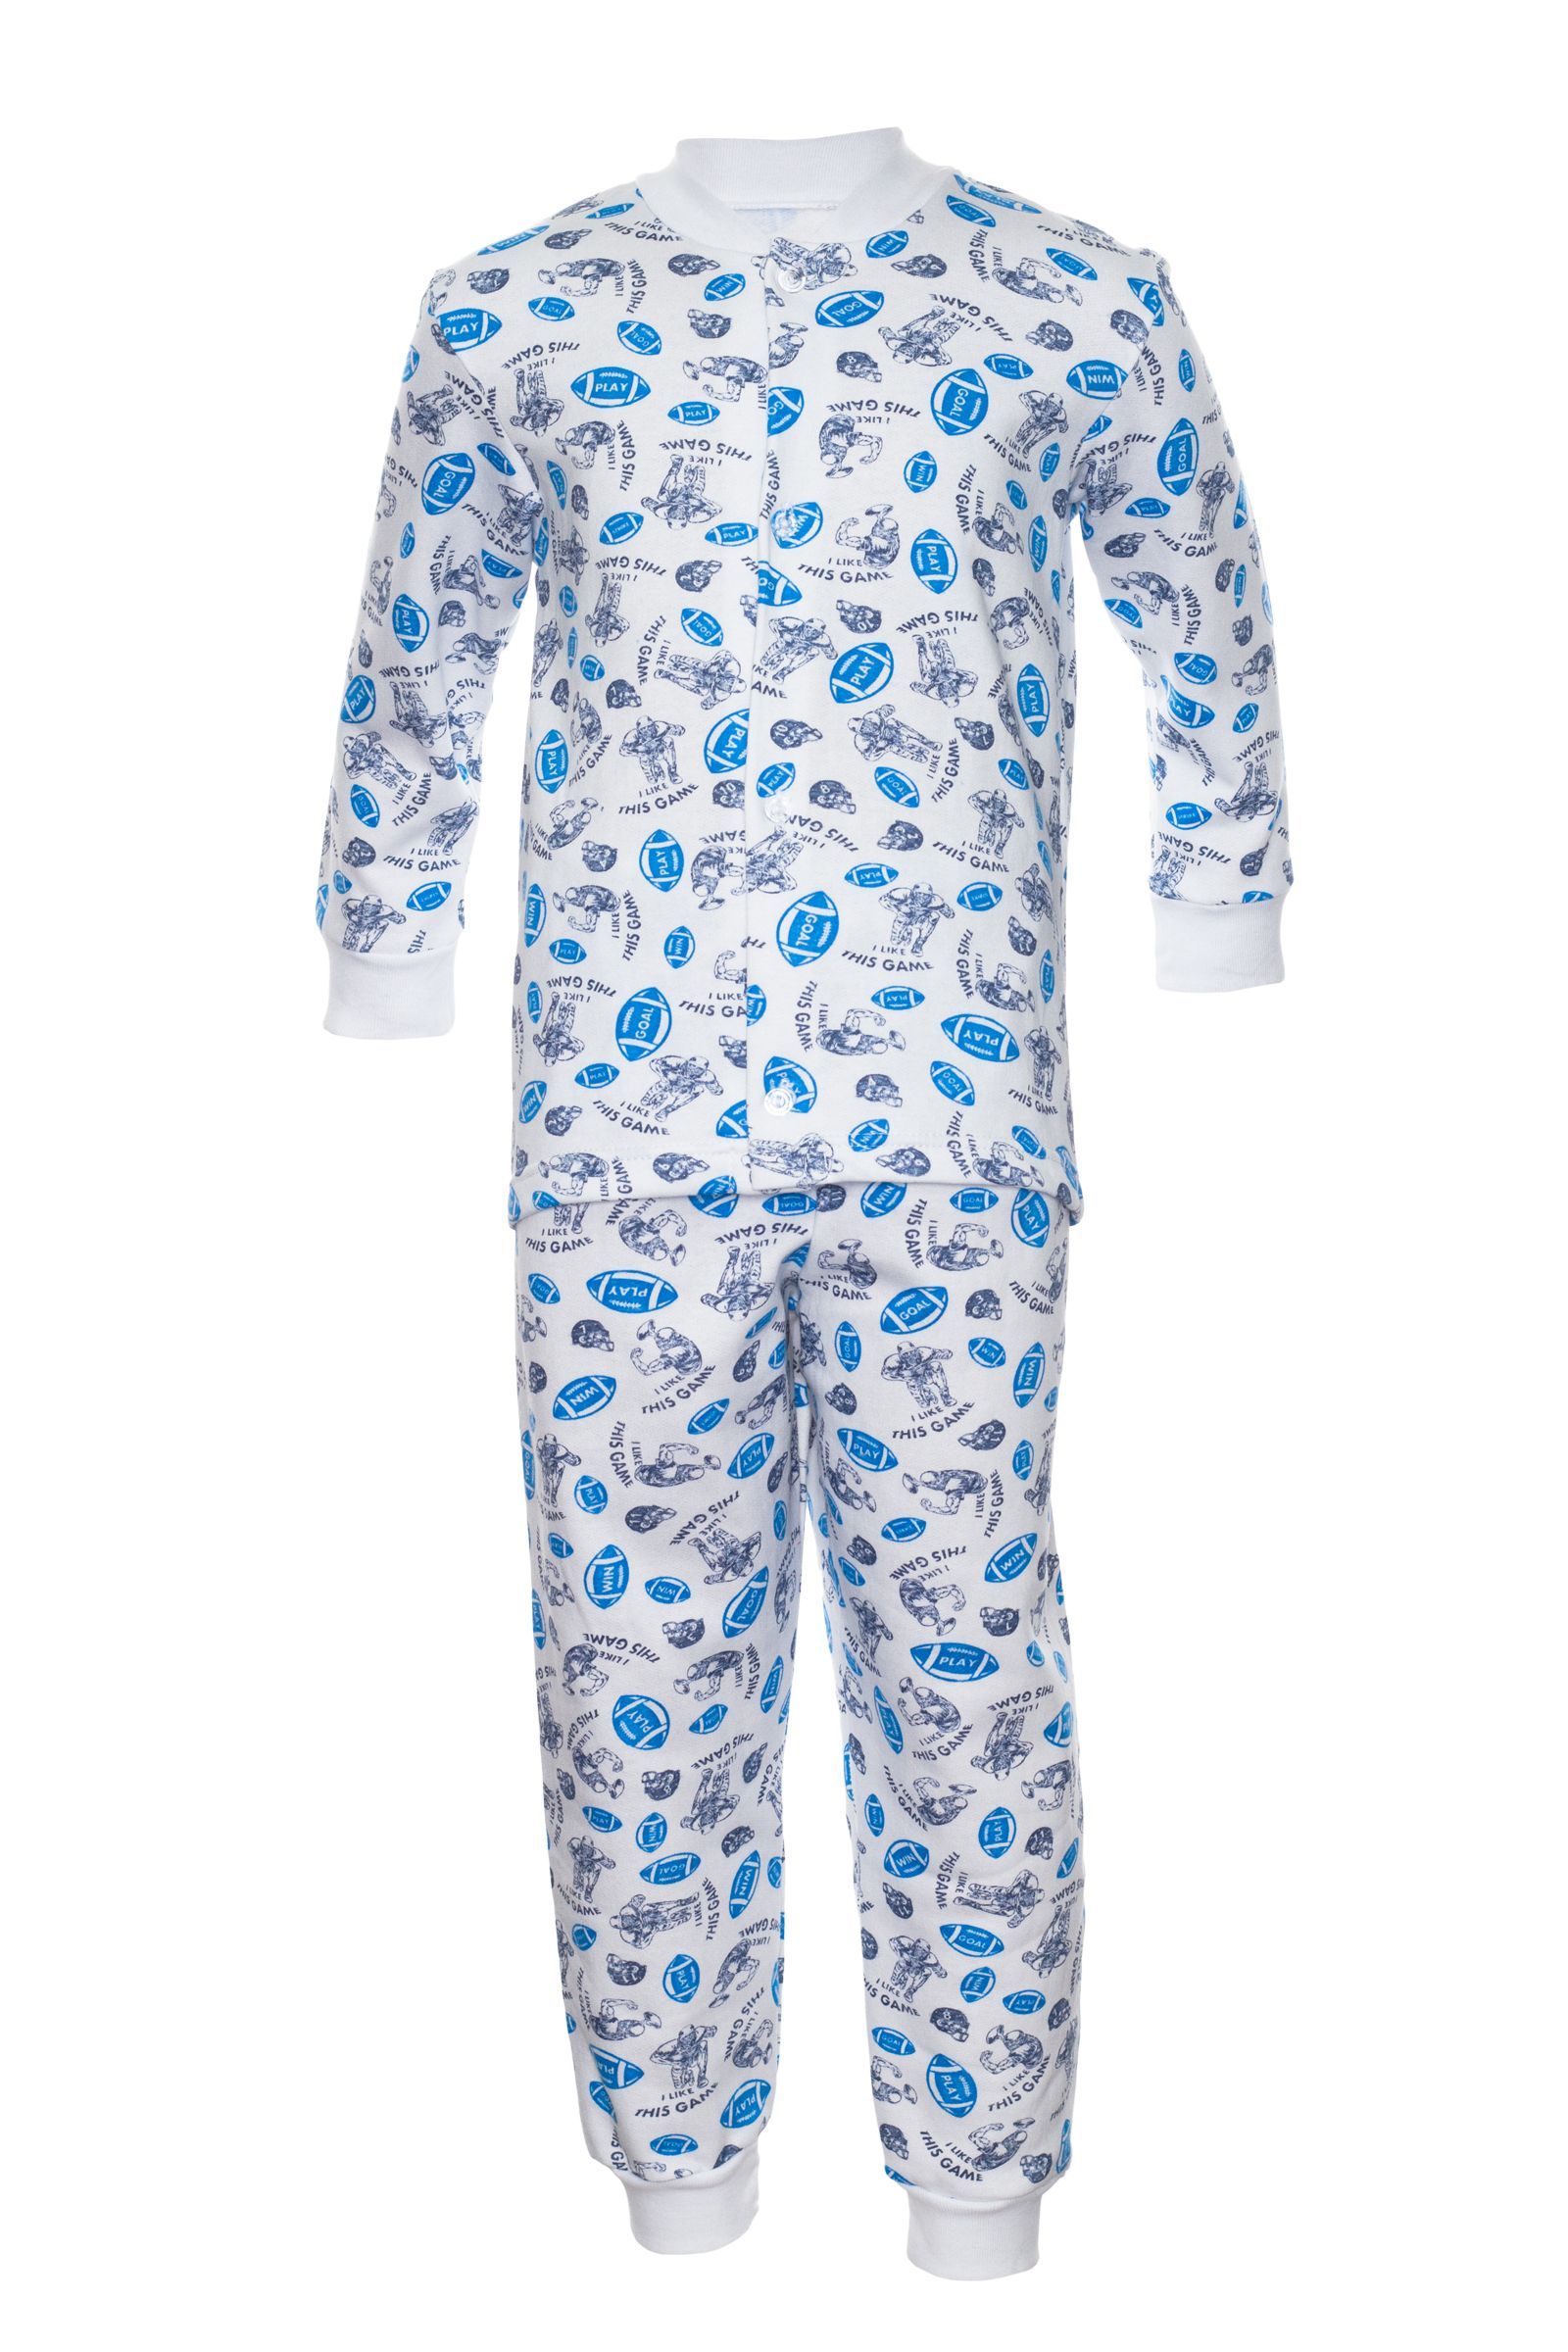 Пижама-ПЖ06-235 оптом от производителя детской одежды 'Алёна'